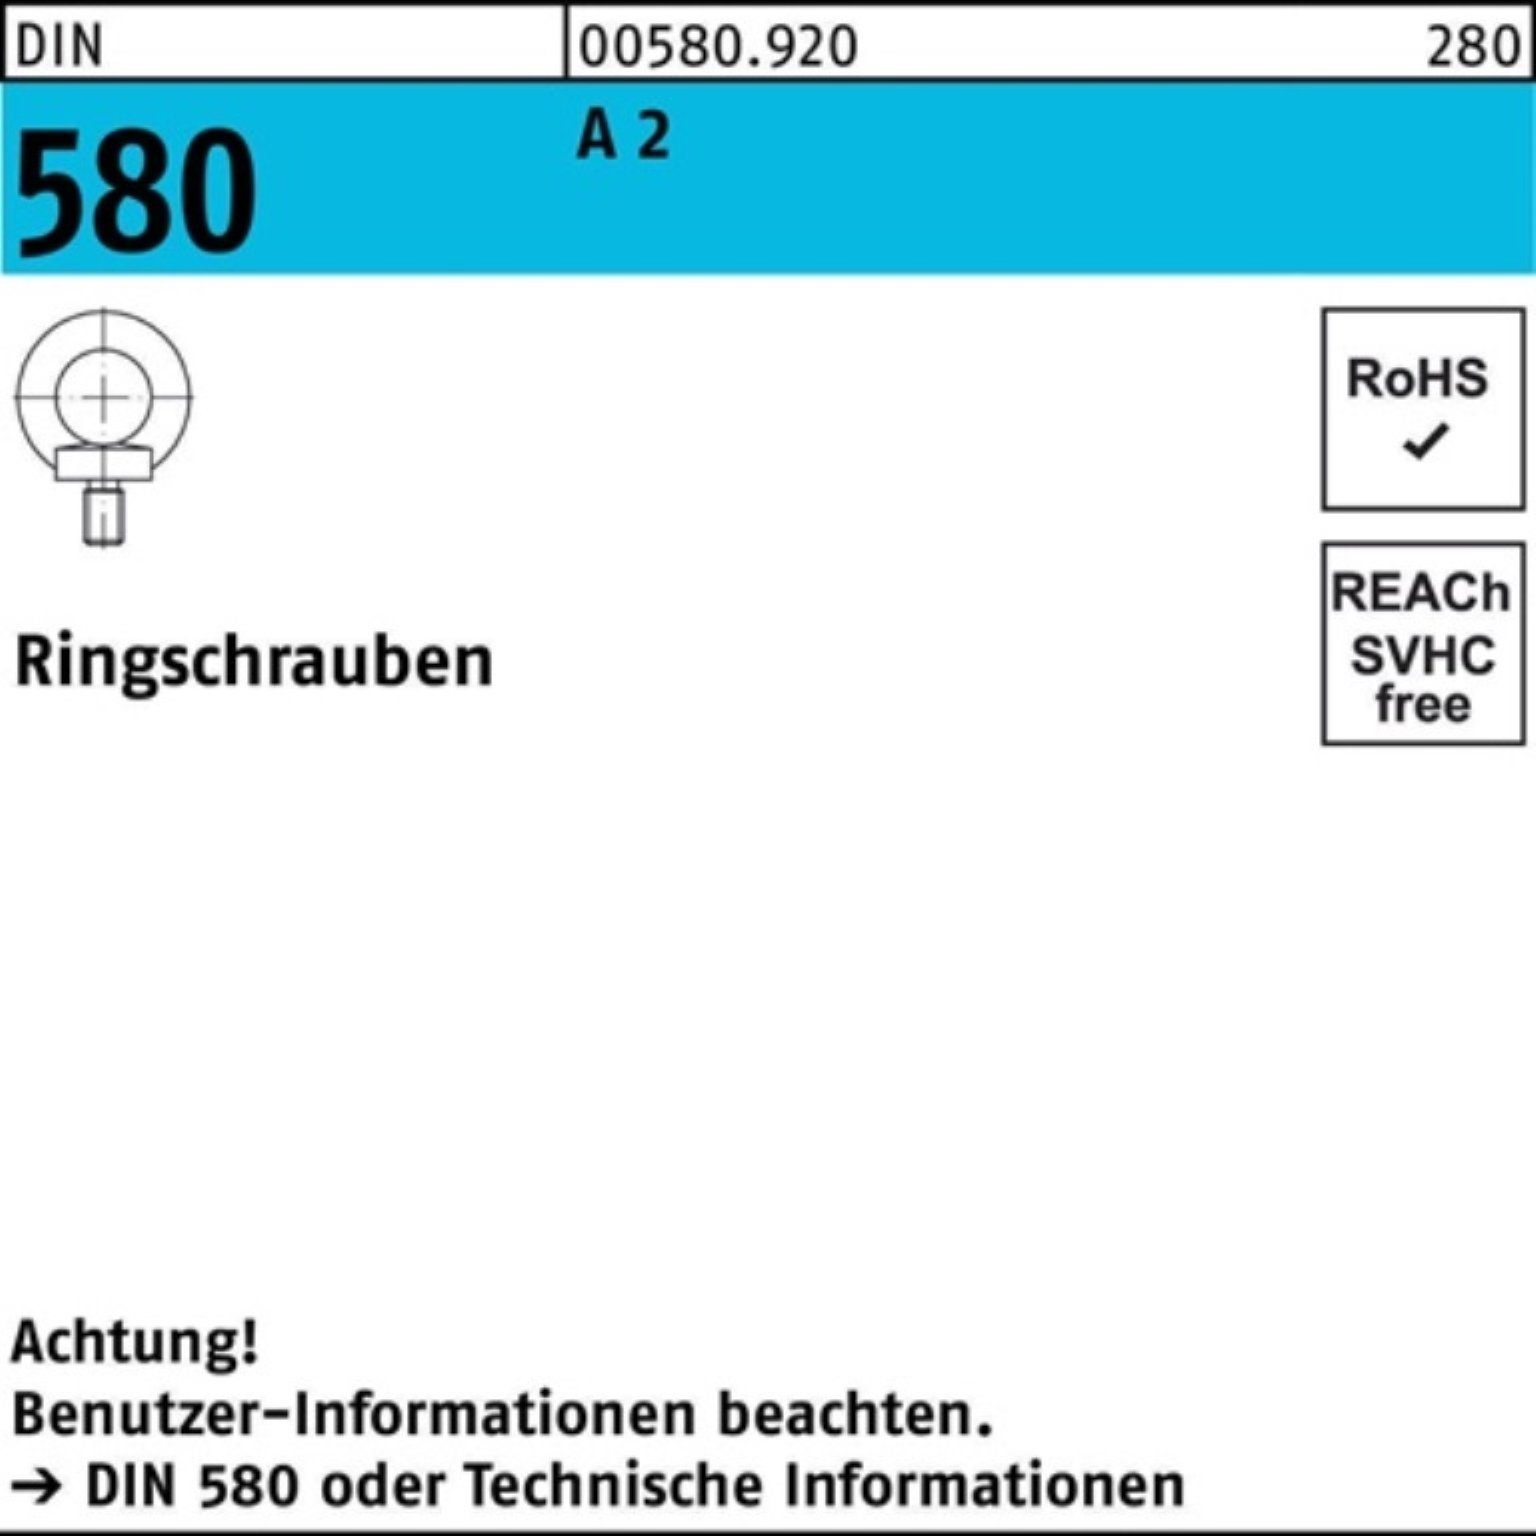 Reyher Schraube 100er Pack Ringschraube DIN 580 M30 A 2 1 Stück DIN 580 A 2 Ringschra